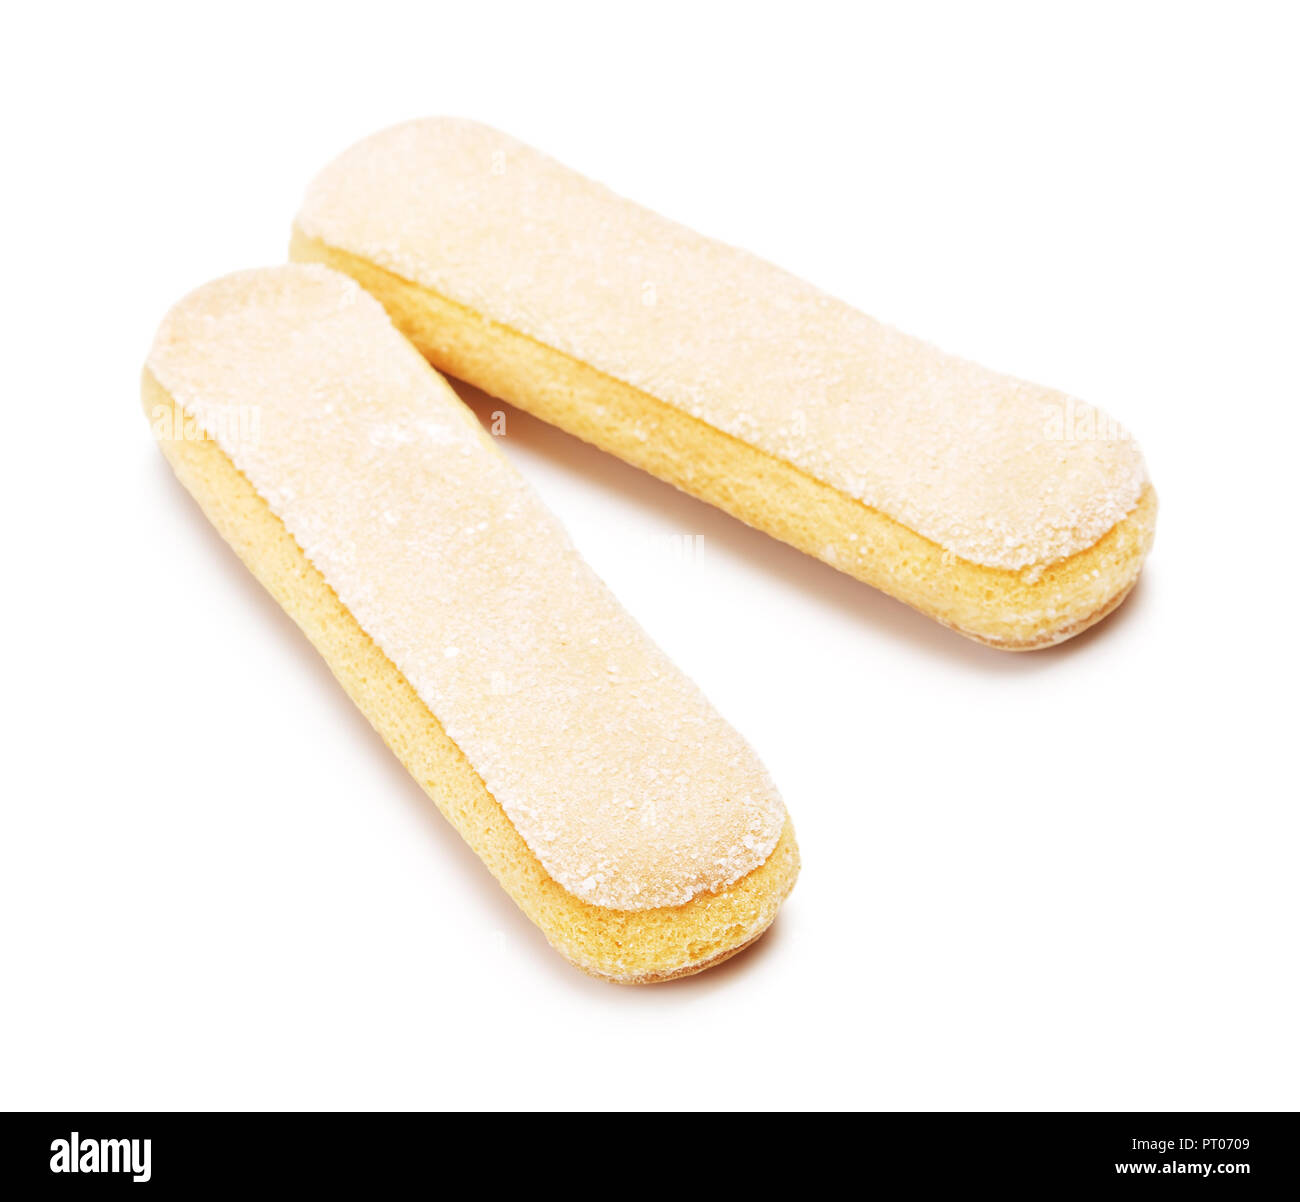 savoiardi, cookies for tiramisu, isolated on white Stock Photo